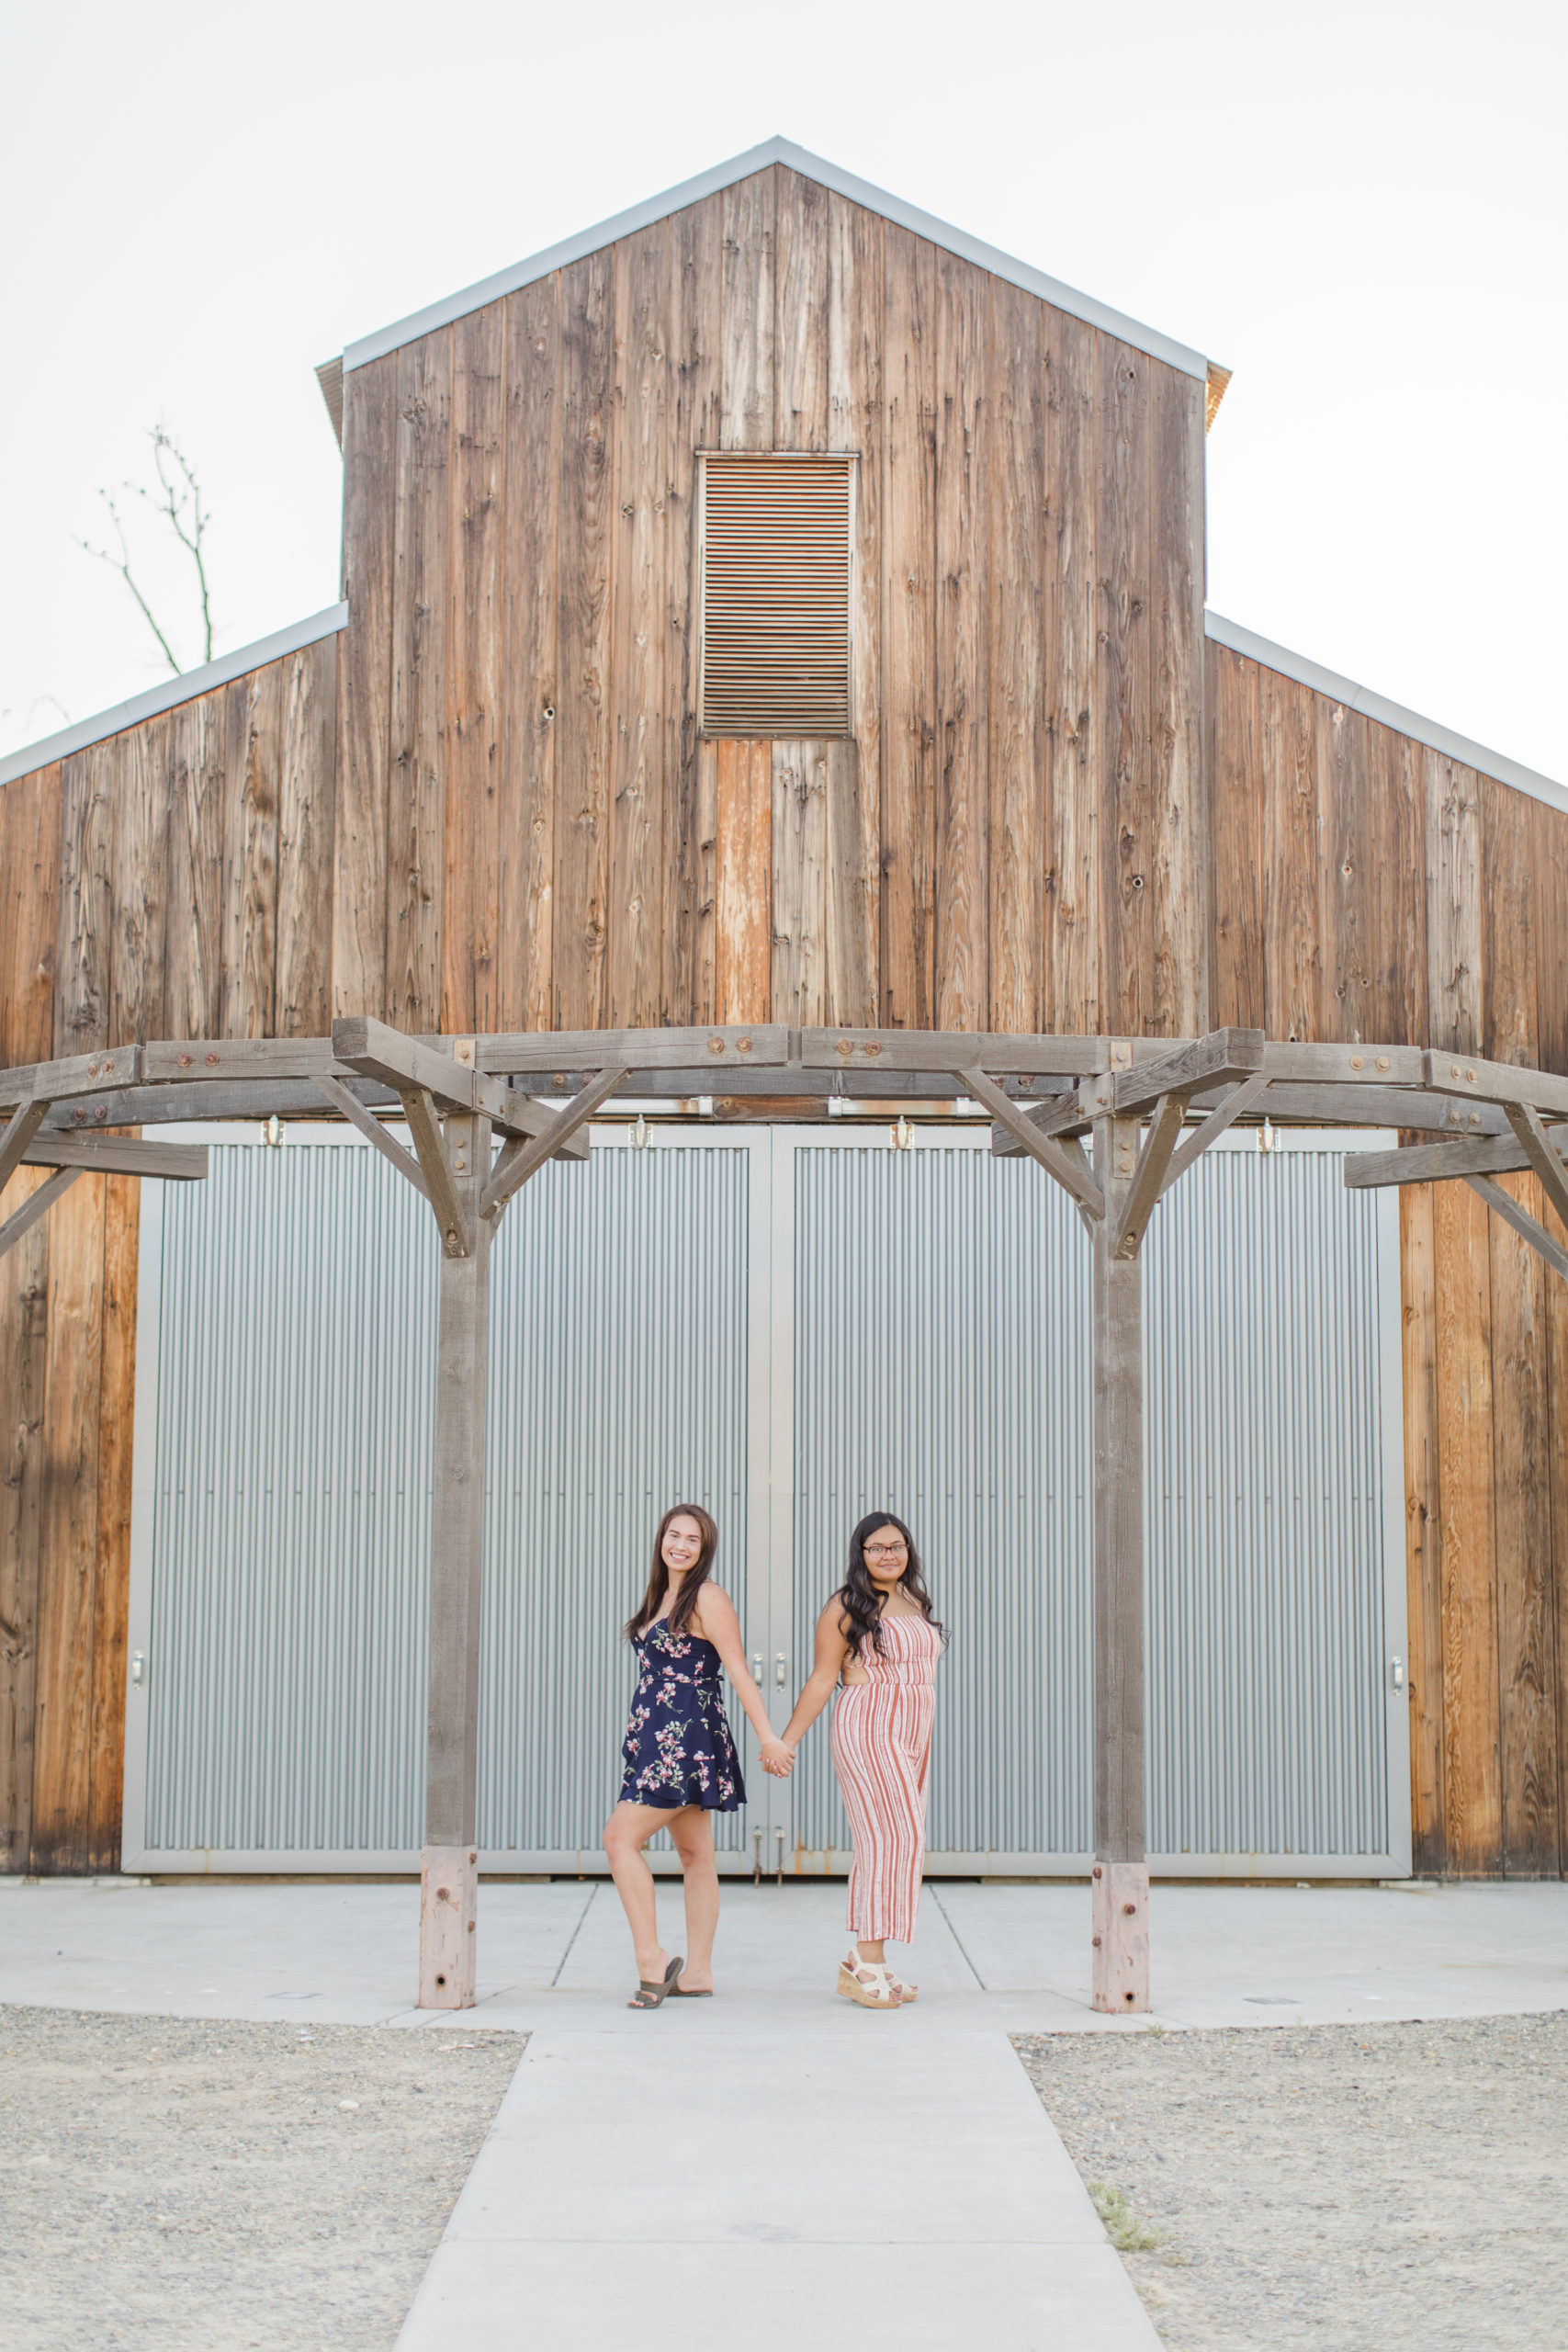 Senior girls pose in front of barn